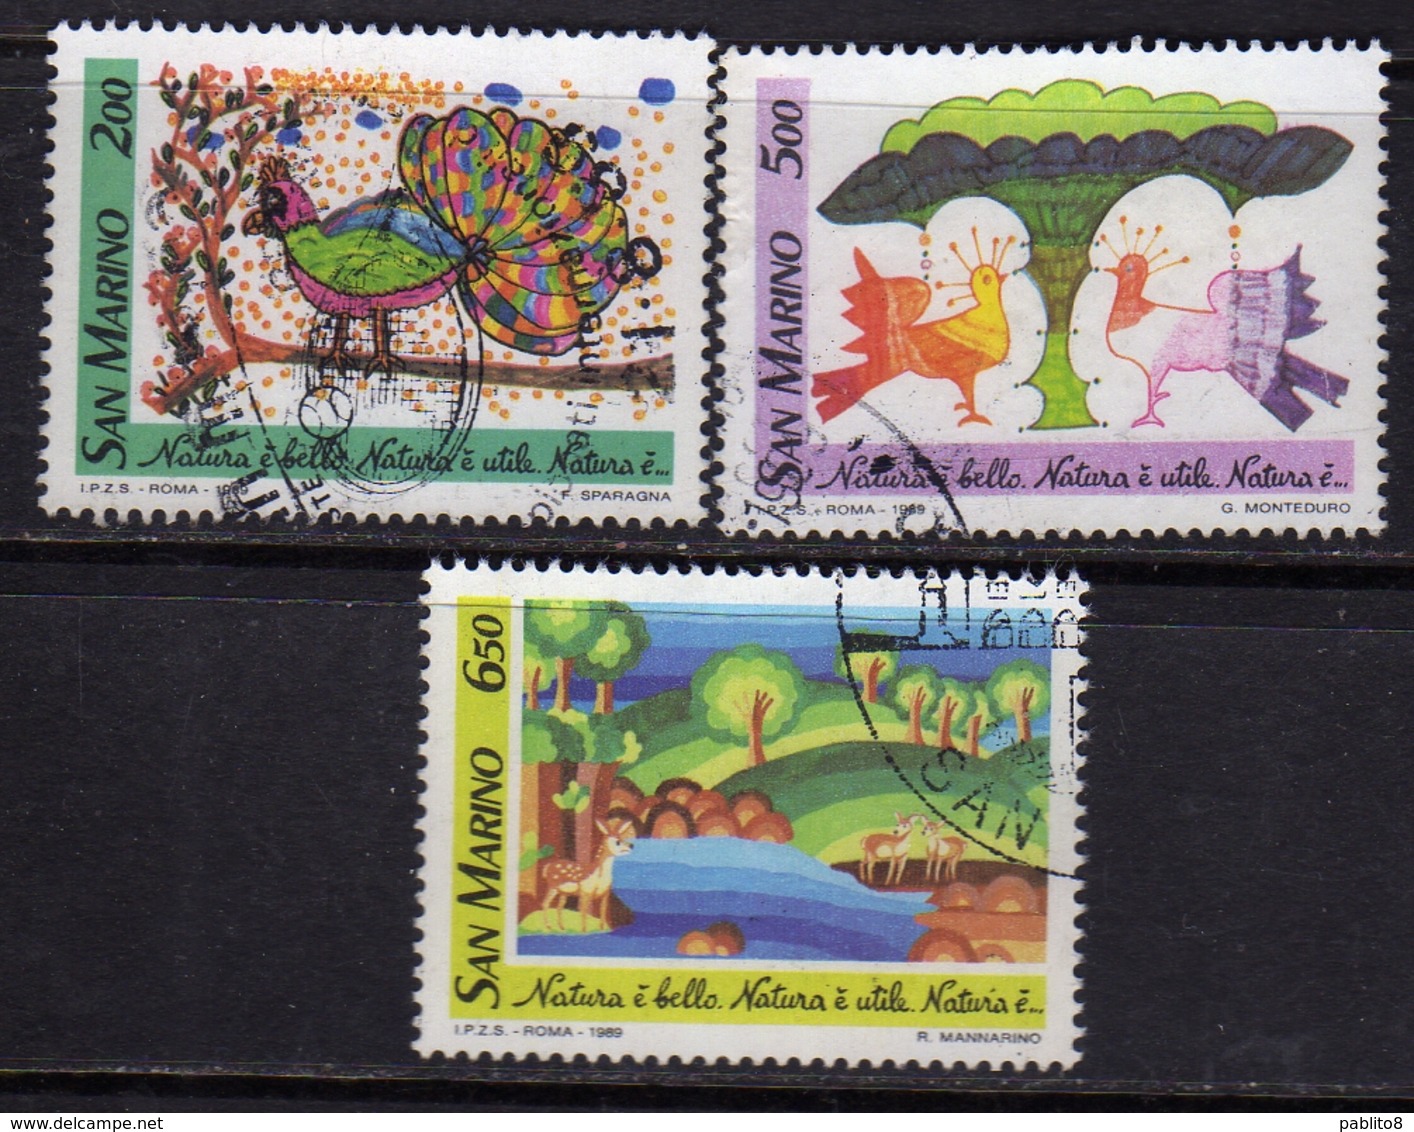 REPUBBLICA DI SAN MARINO 1989 NATURA E' BELLO, NATURA E' UTILE, NATURA E'.. SERIE COMPLETA COMPLETE SET USATA USED OBLIT - Used Stamps